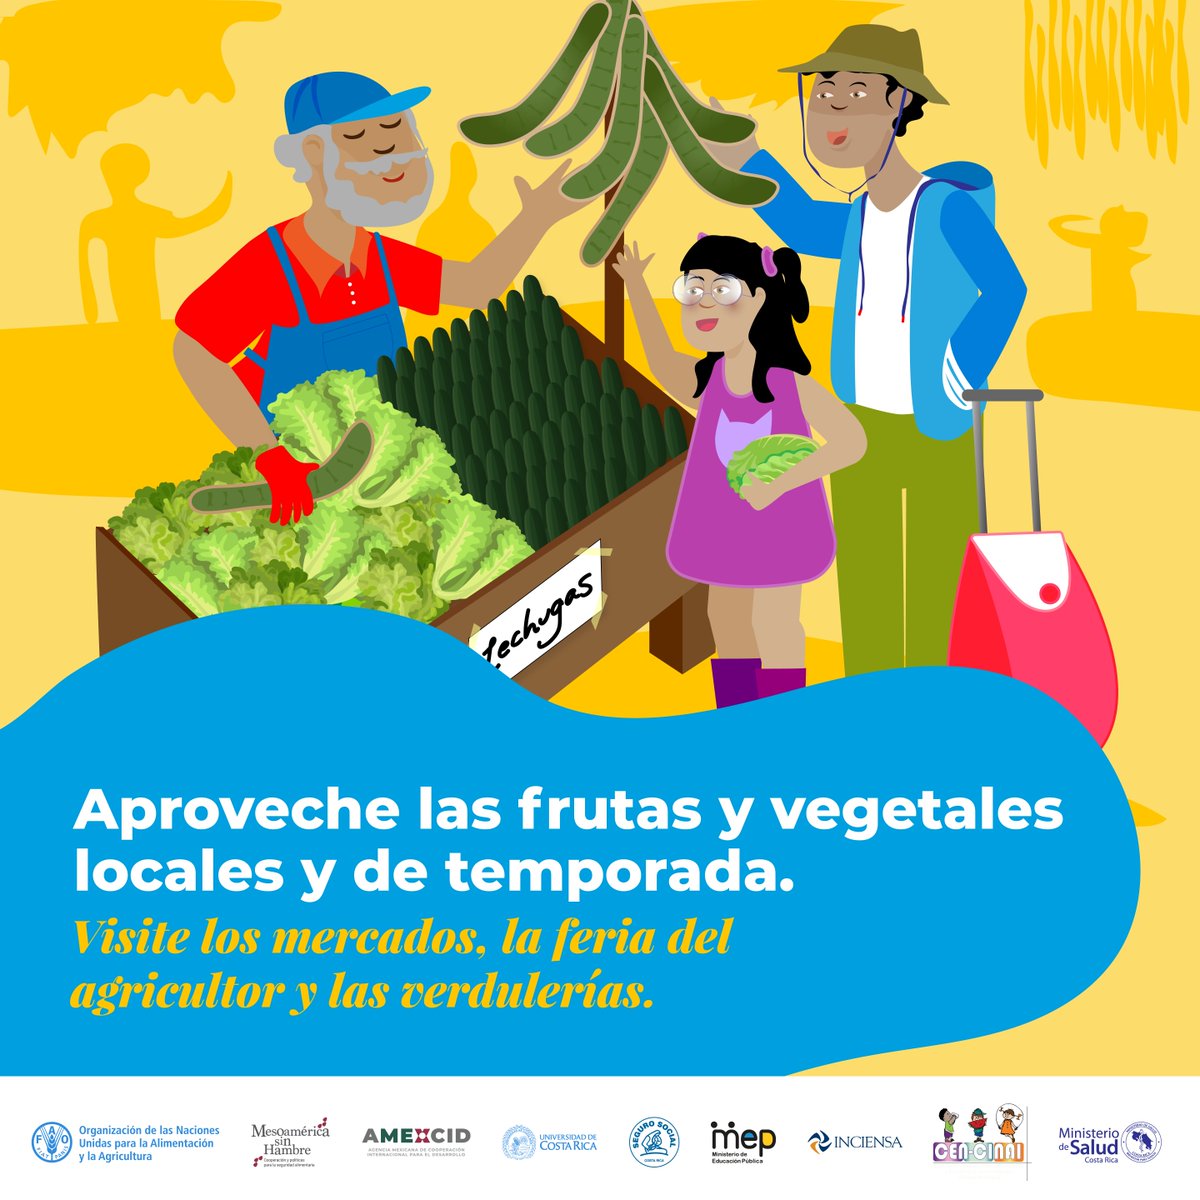 #SabíasQué hoy #3DeMayo #Centroamérica y #RepúblicaDominicana conmemoran  el #DíaDeLasFrutas.
🍎🍋🍌🍊🍓
🥝🍉🍈
🍇🍐
🍑

Incluya frutas de #temporada ¡es más económico!  

#5AlDía #MásFrutaMásVida